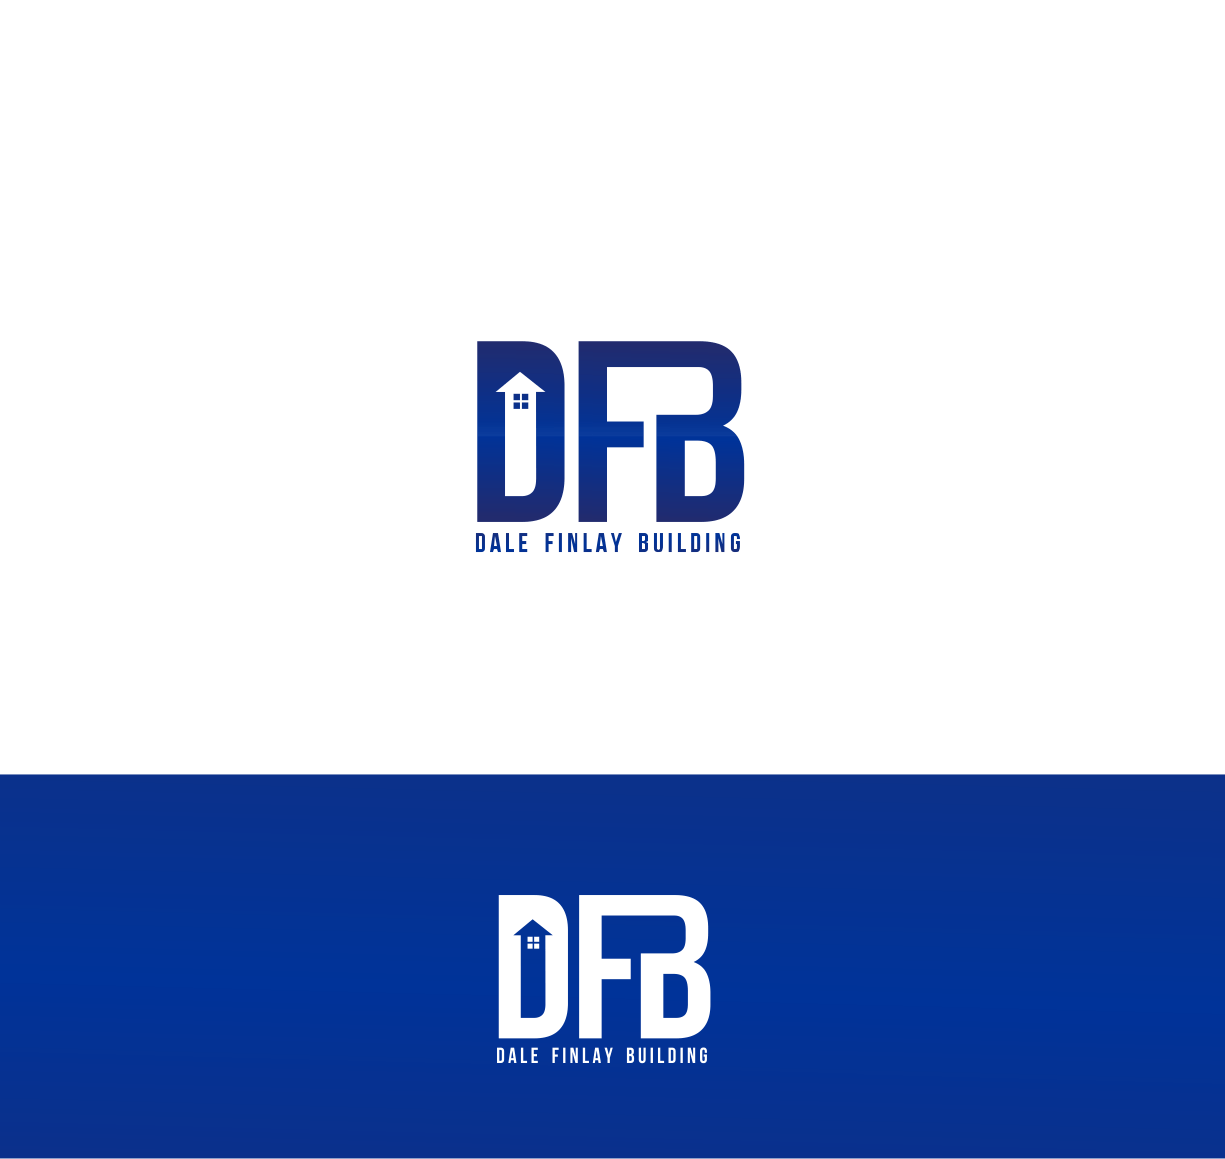 DFB Logo - Modern, Masculine, Residential Construction Logo Design for DFB